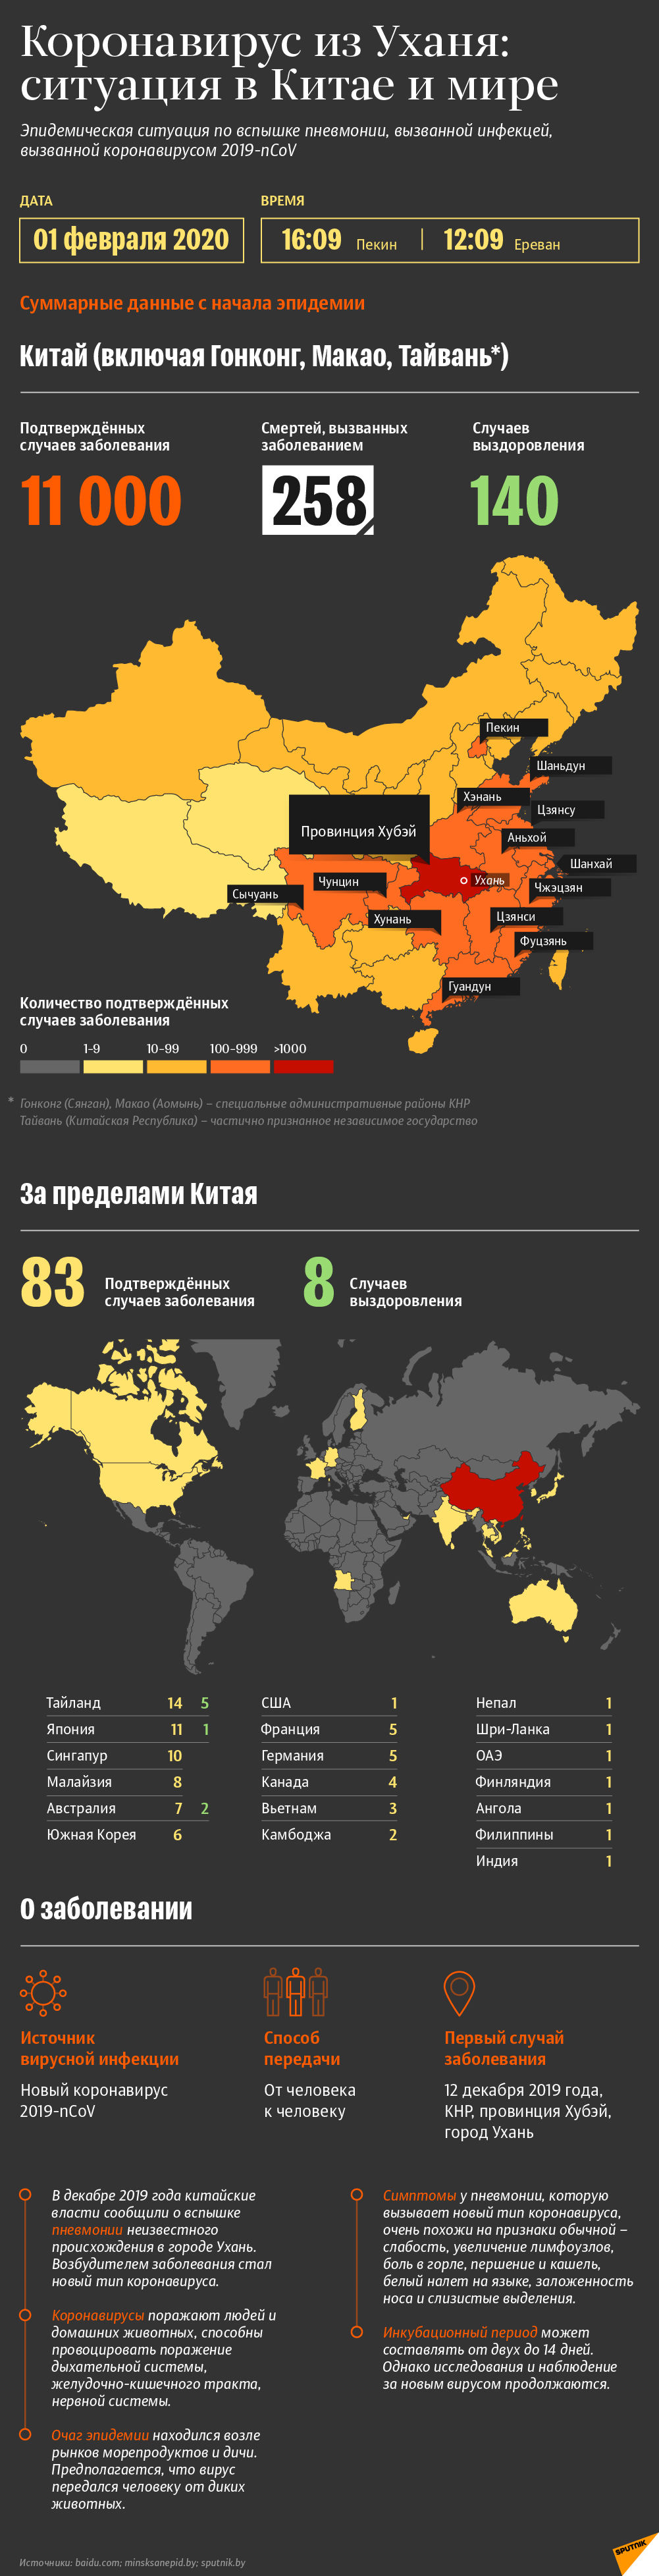 Коронавирус из Уханя: эпидемическая ситуация в Китае и мире | Инфографика sputnik.by - Sputnik Армения